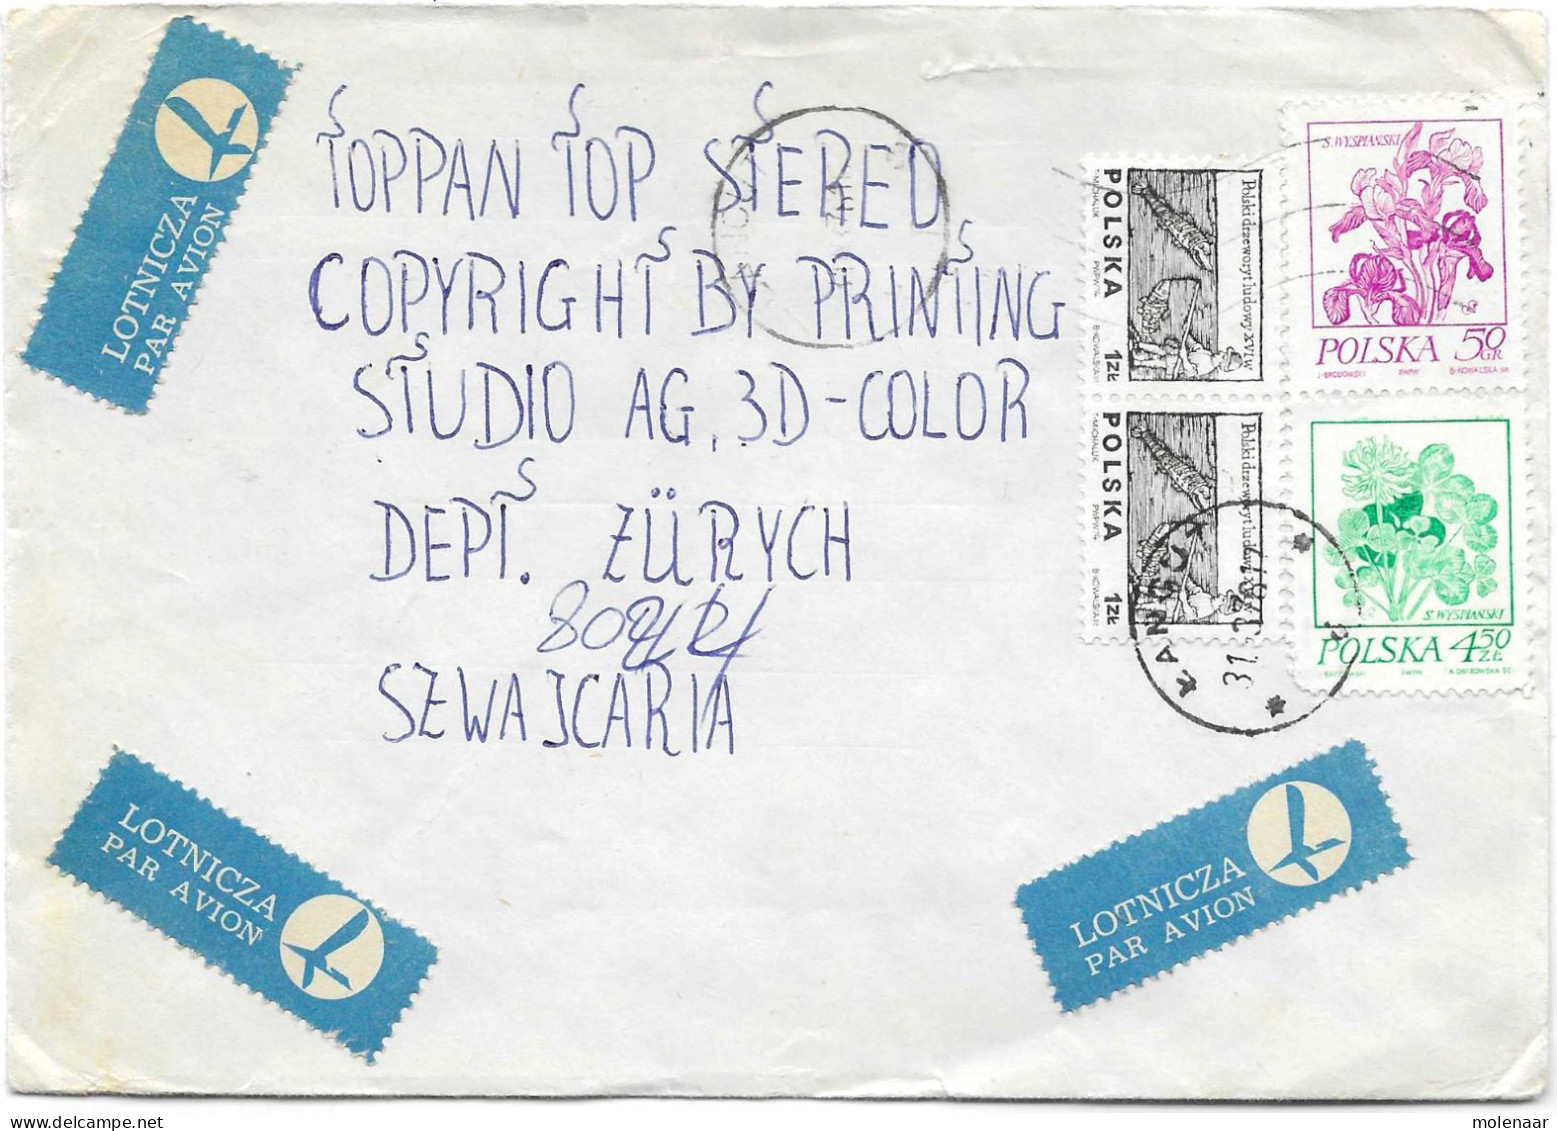 Postzegels > Europa > Polen > 1944-.... Republiek > 1971-80 > Brief Met 4 Postzegels (17132) - Brieven En Documenten